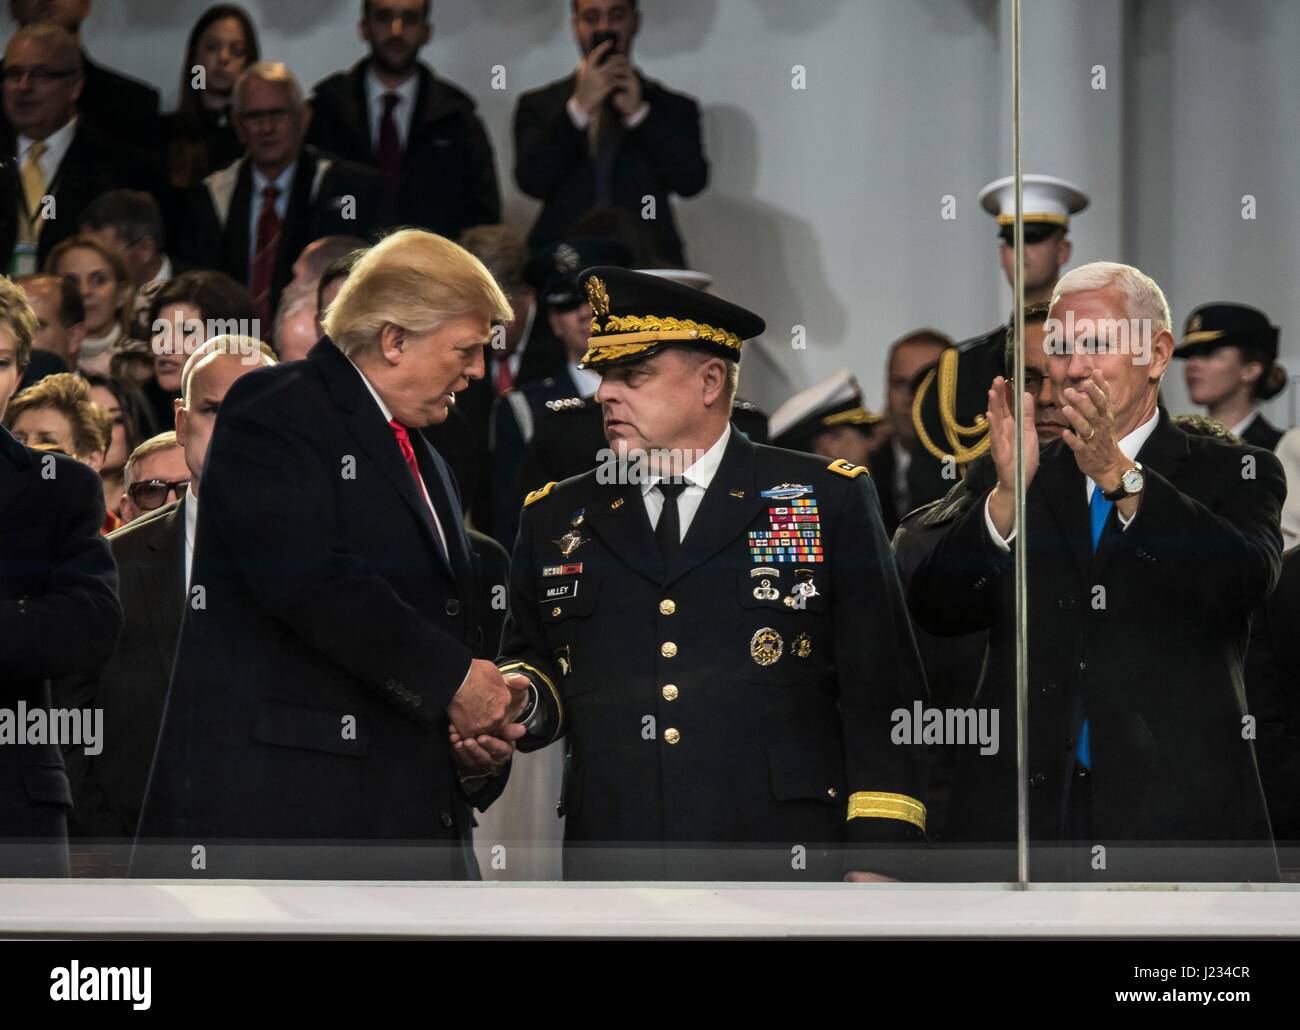 US-Präsident Donald Trump schüttelt Hände mit US Armee-Stabschef Mark Milley während der 58. Presidential Inauguration Parade 20. Januar 2017 in Washington, DC.     (Foto von Michel Sauret EURO1 Armeereserve über Planetpix) Stockfoto